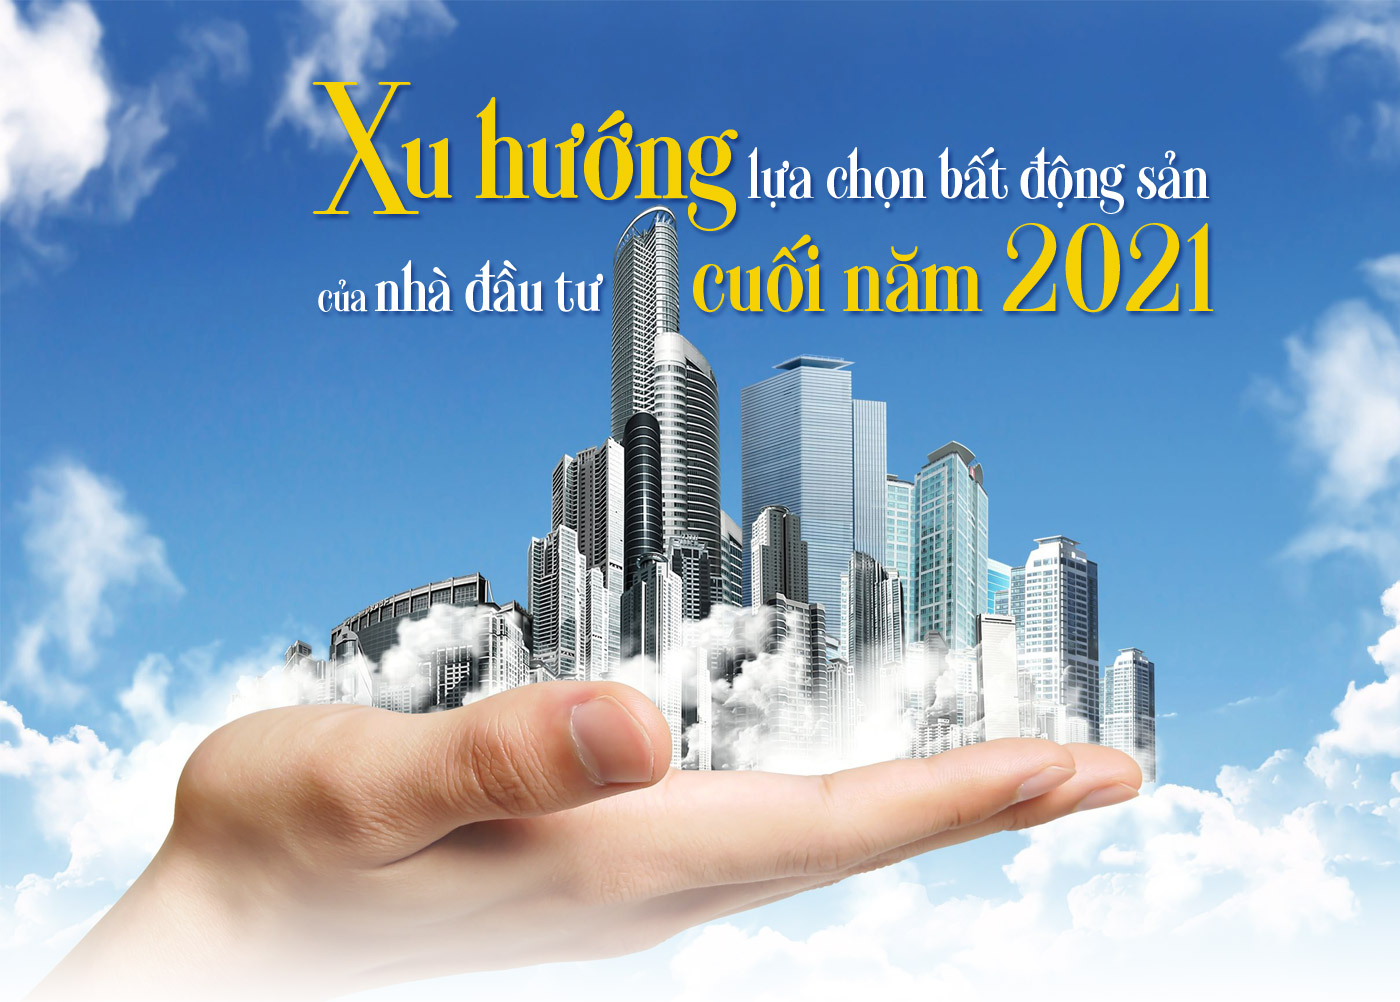 Xu hướng lựa chọn bất động sản của nhà đầu tư cuối năm 2021 - Ảnh 1